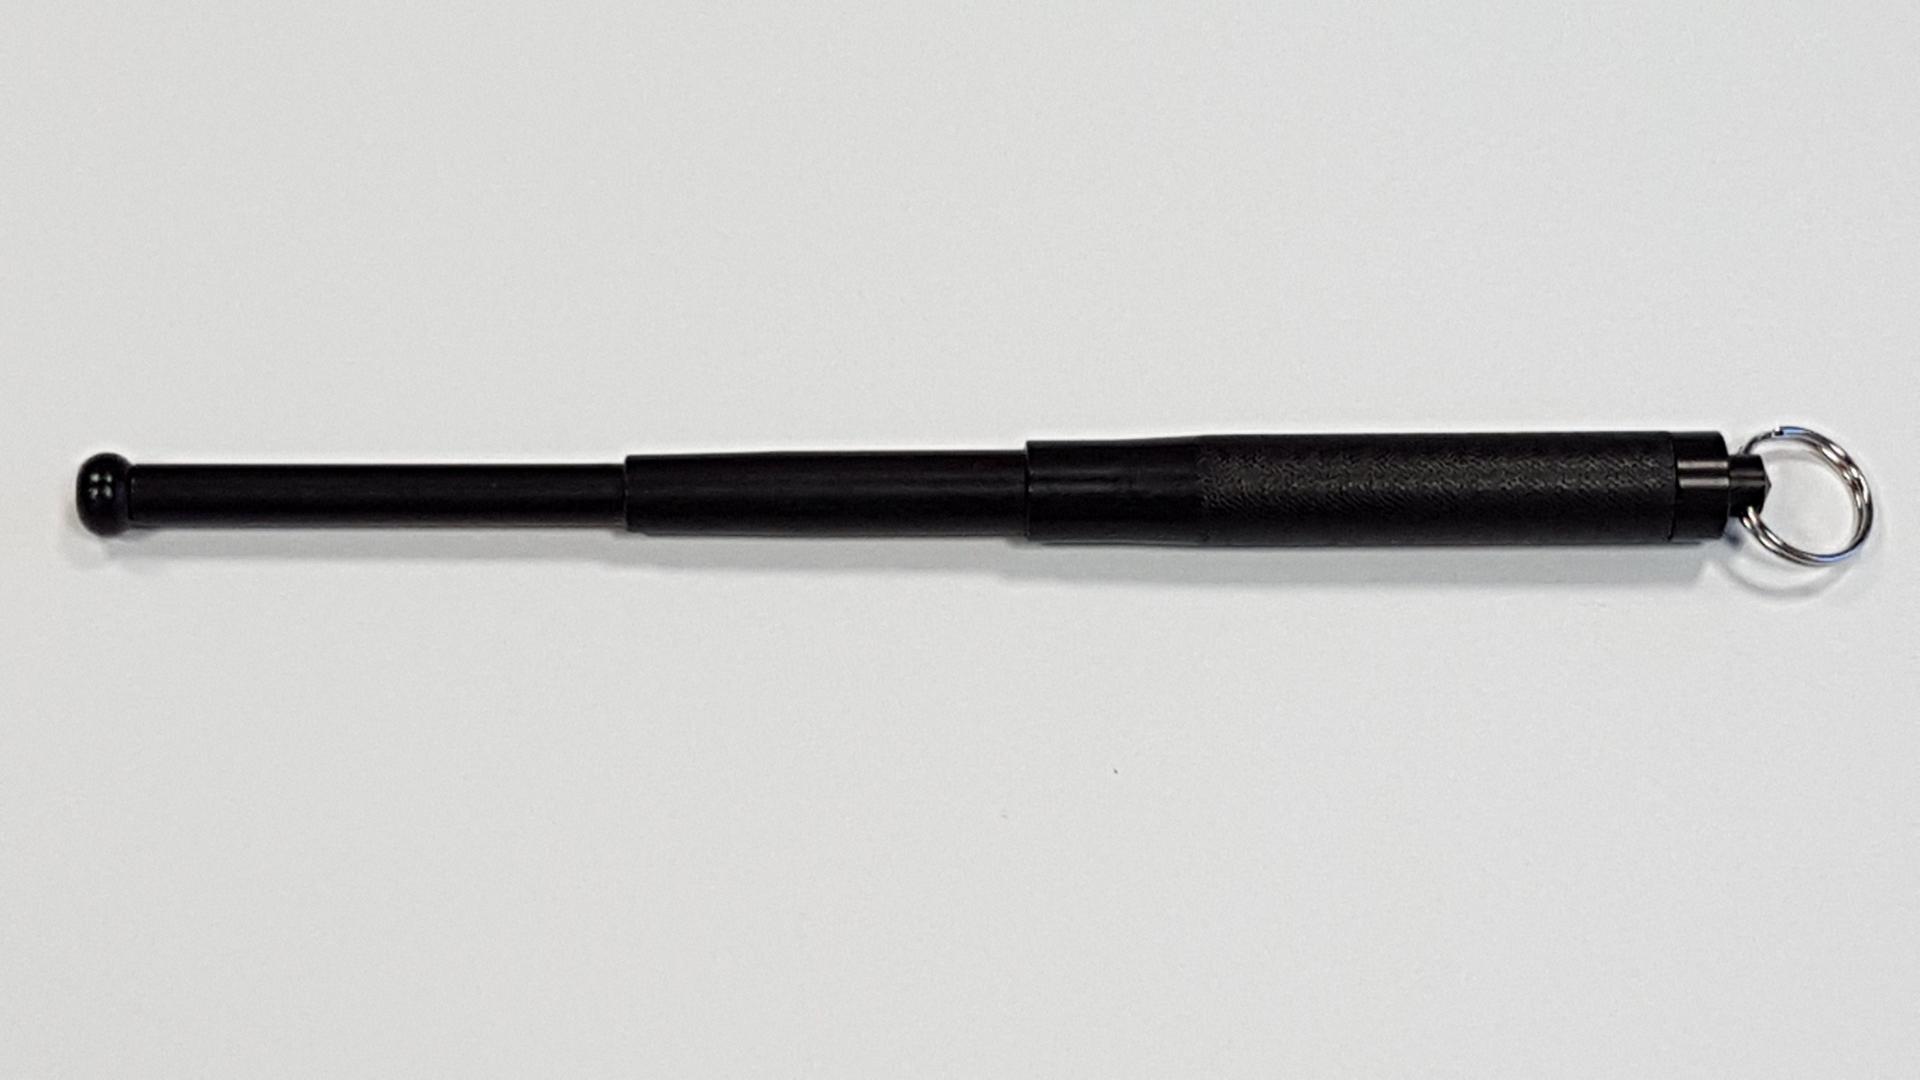 Matraque noire : long 14 cm fermée / 31 cm ouverte